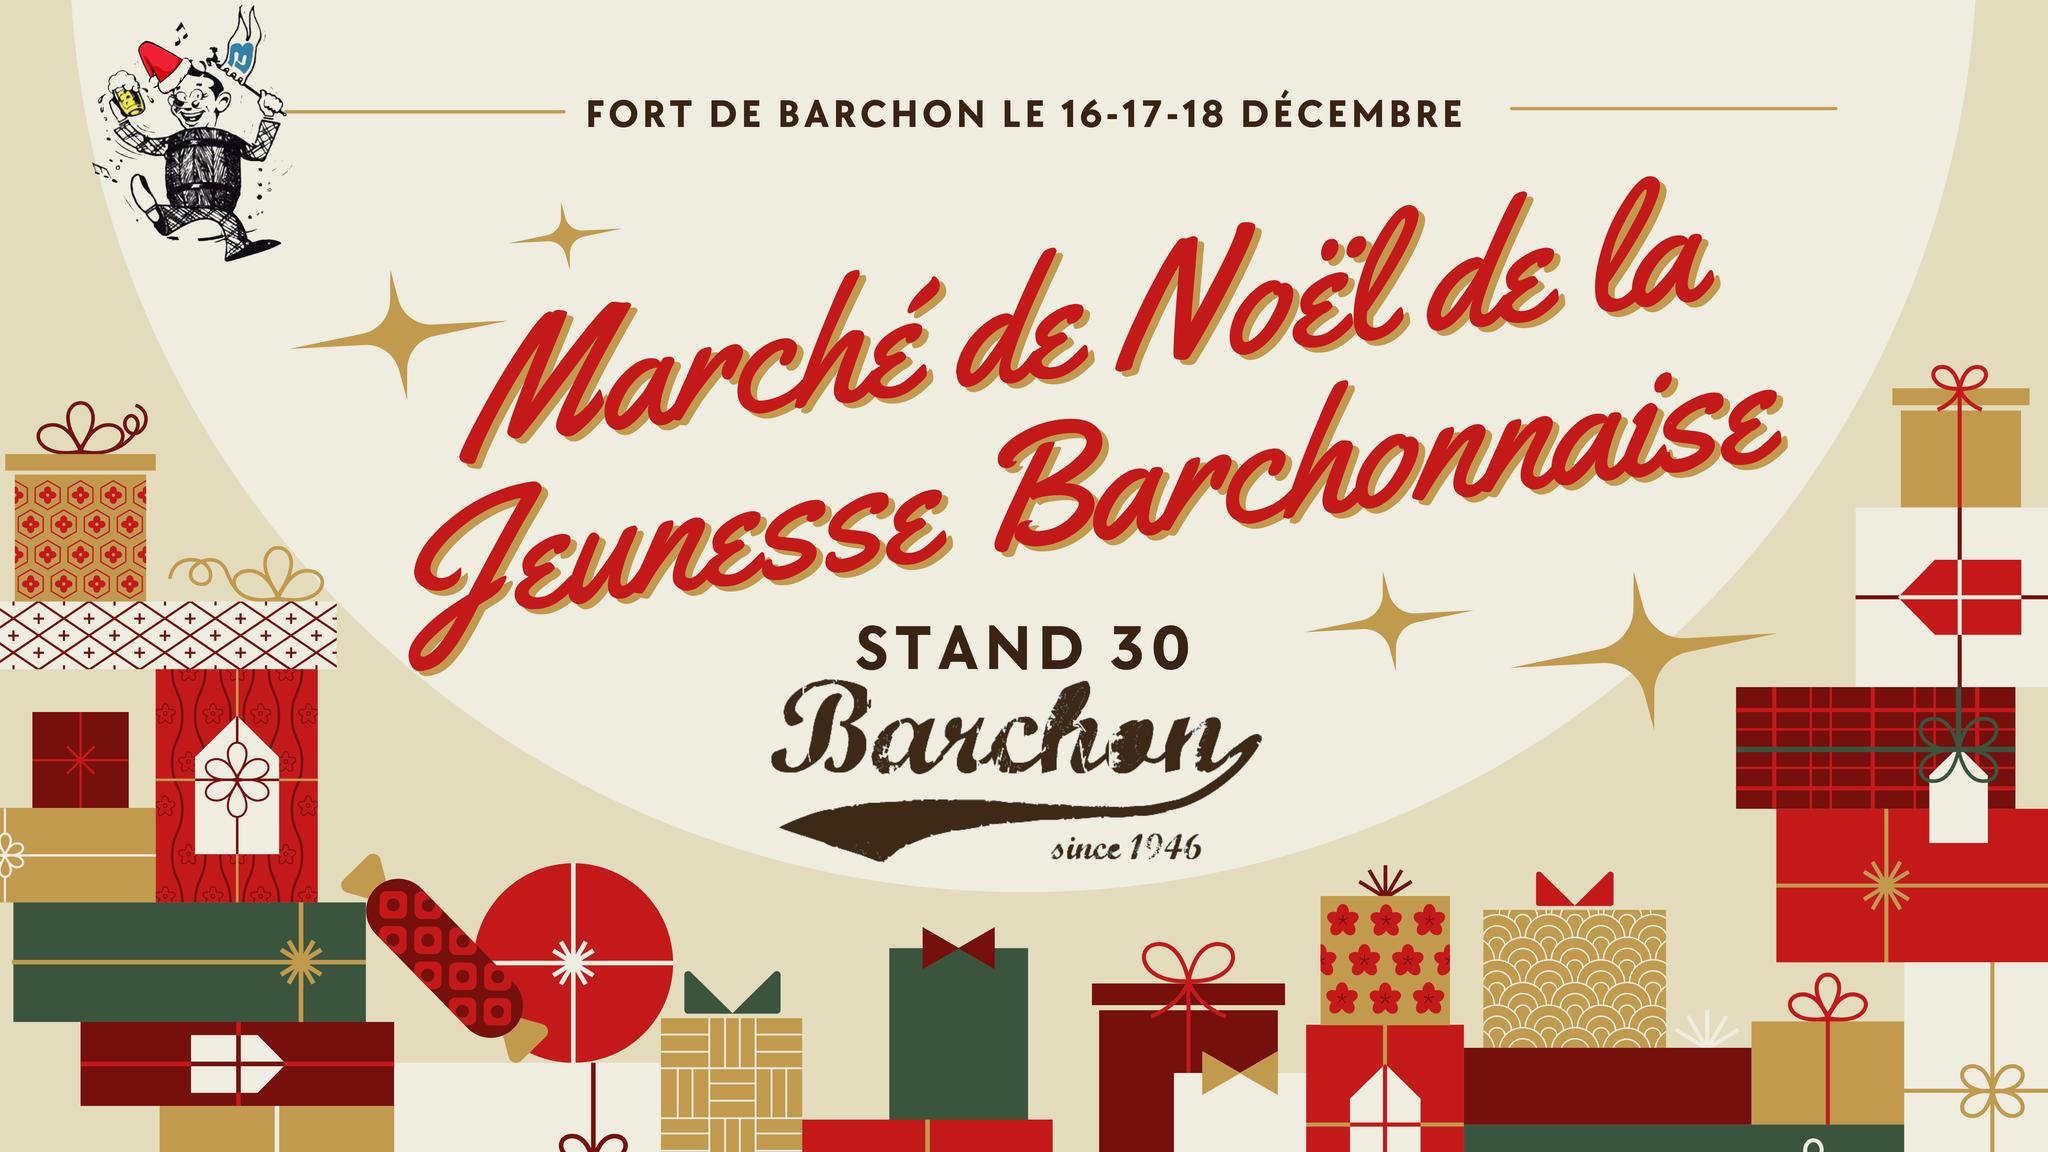 Marché de Noël de la Jeunesse Barchonnaise au Fort de BARCHON